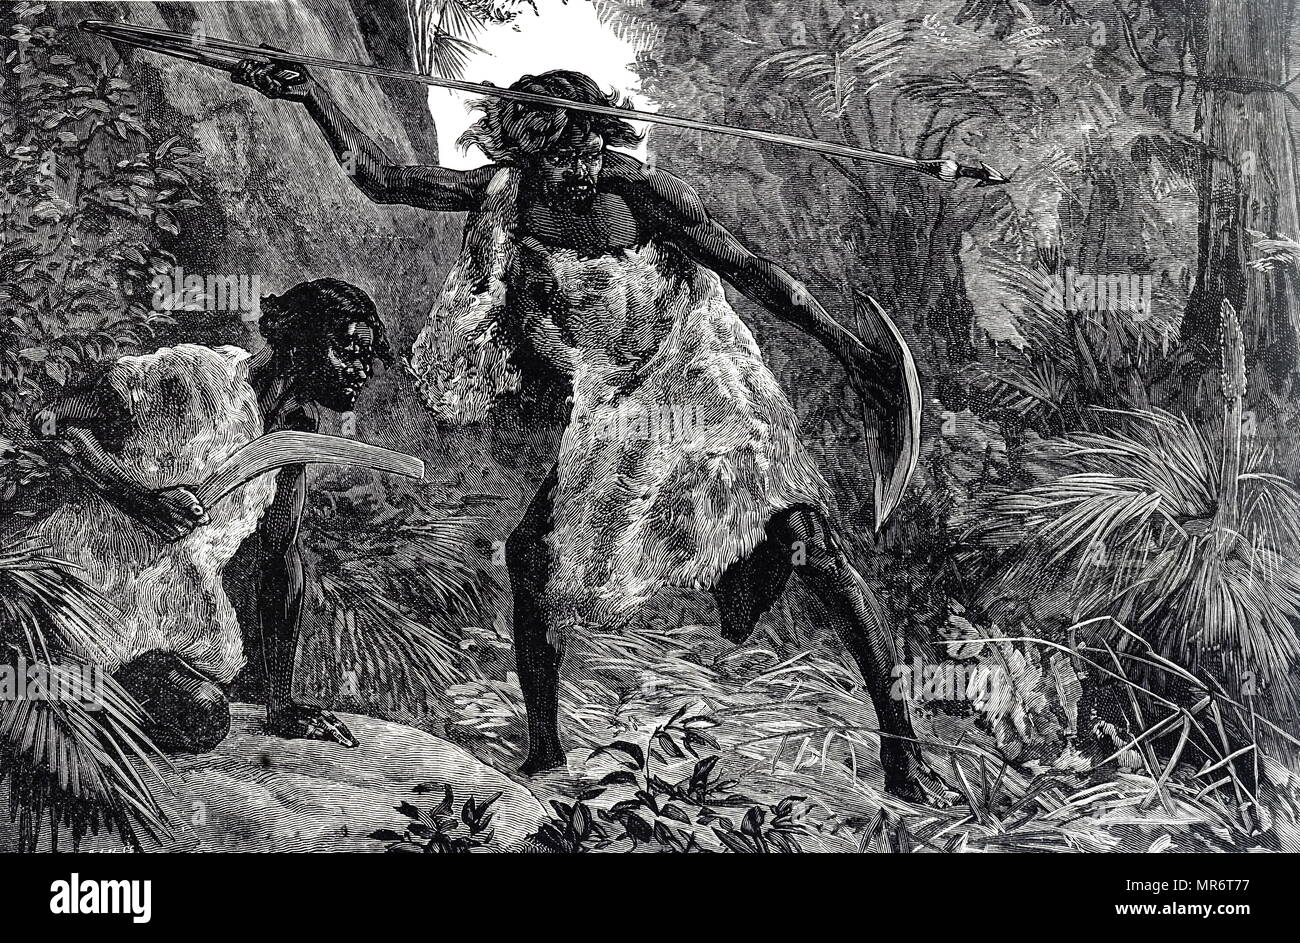 Grabado representando a los aborígenes australianos la caza con una lanza y un boomerang. Fecha del siglo XIX Foto de stock